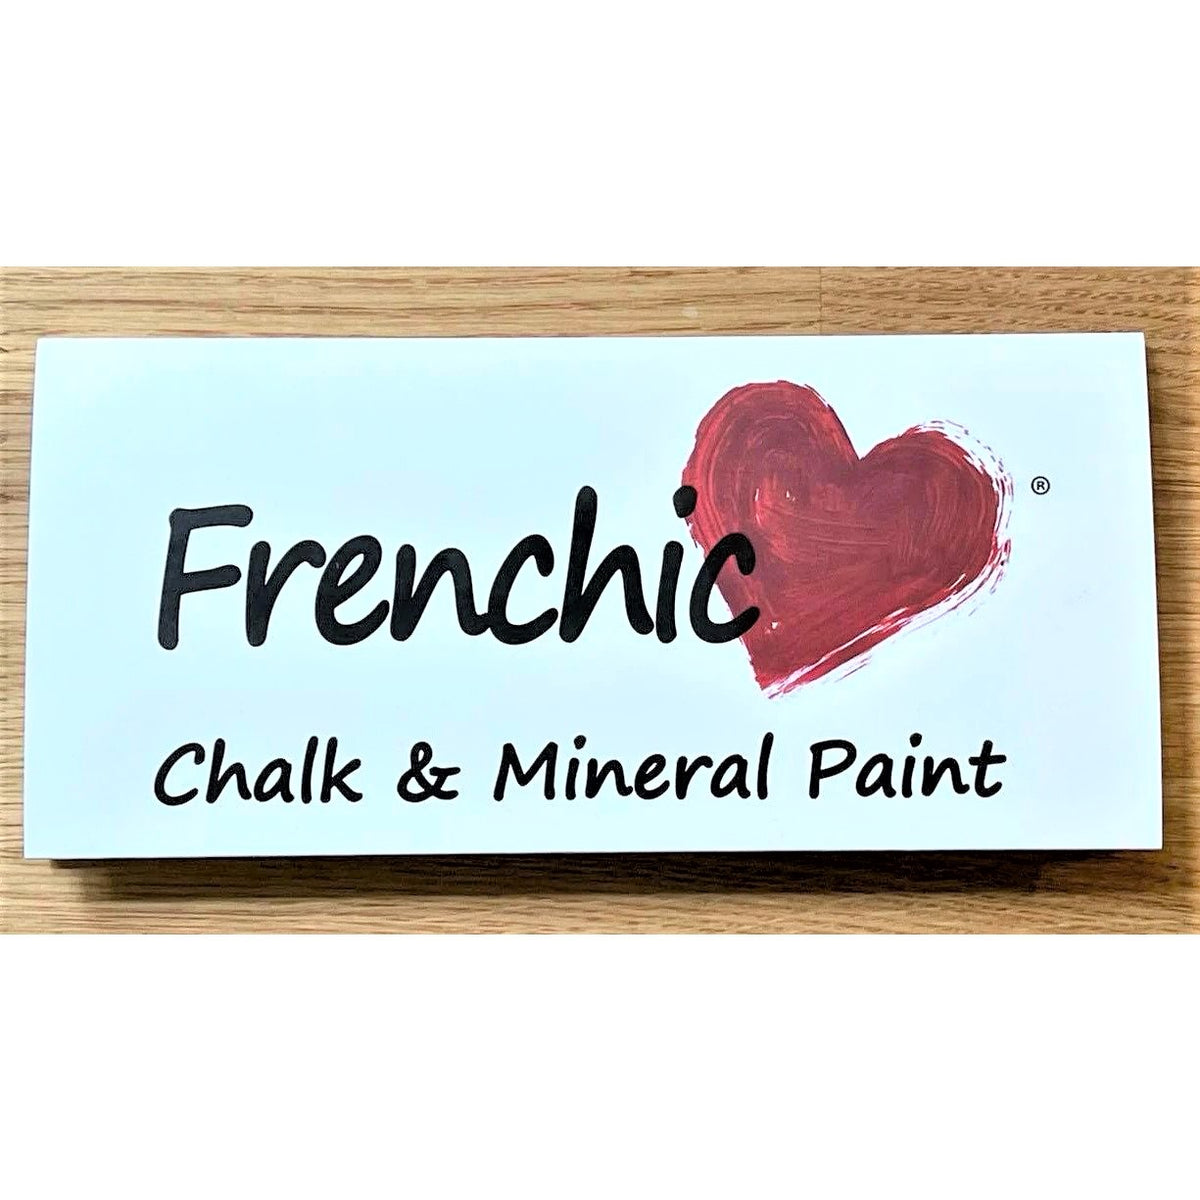 Frenchic-värikartta